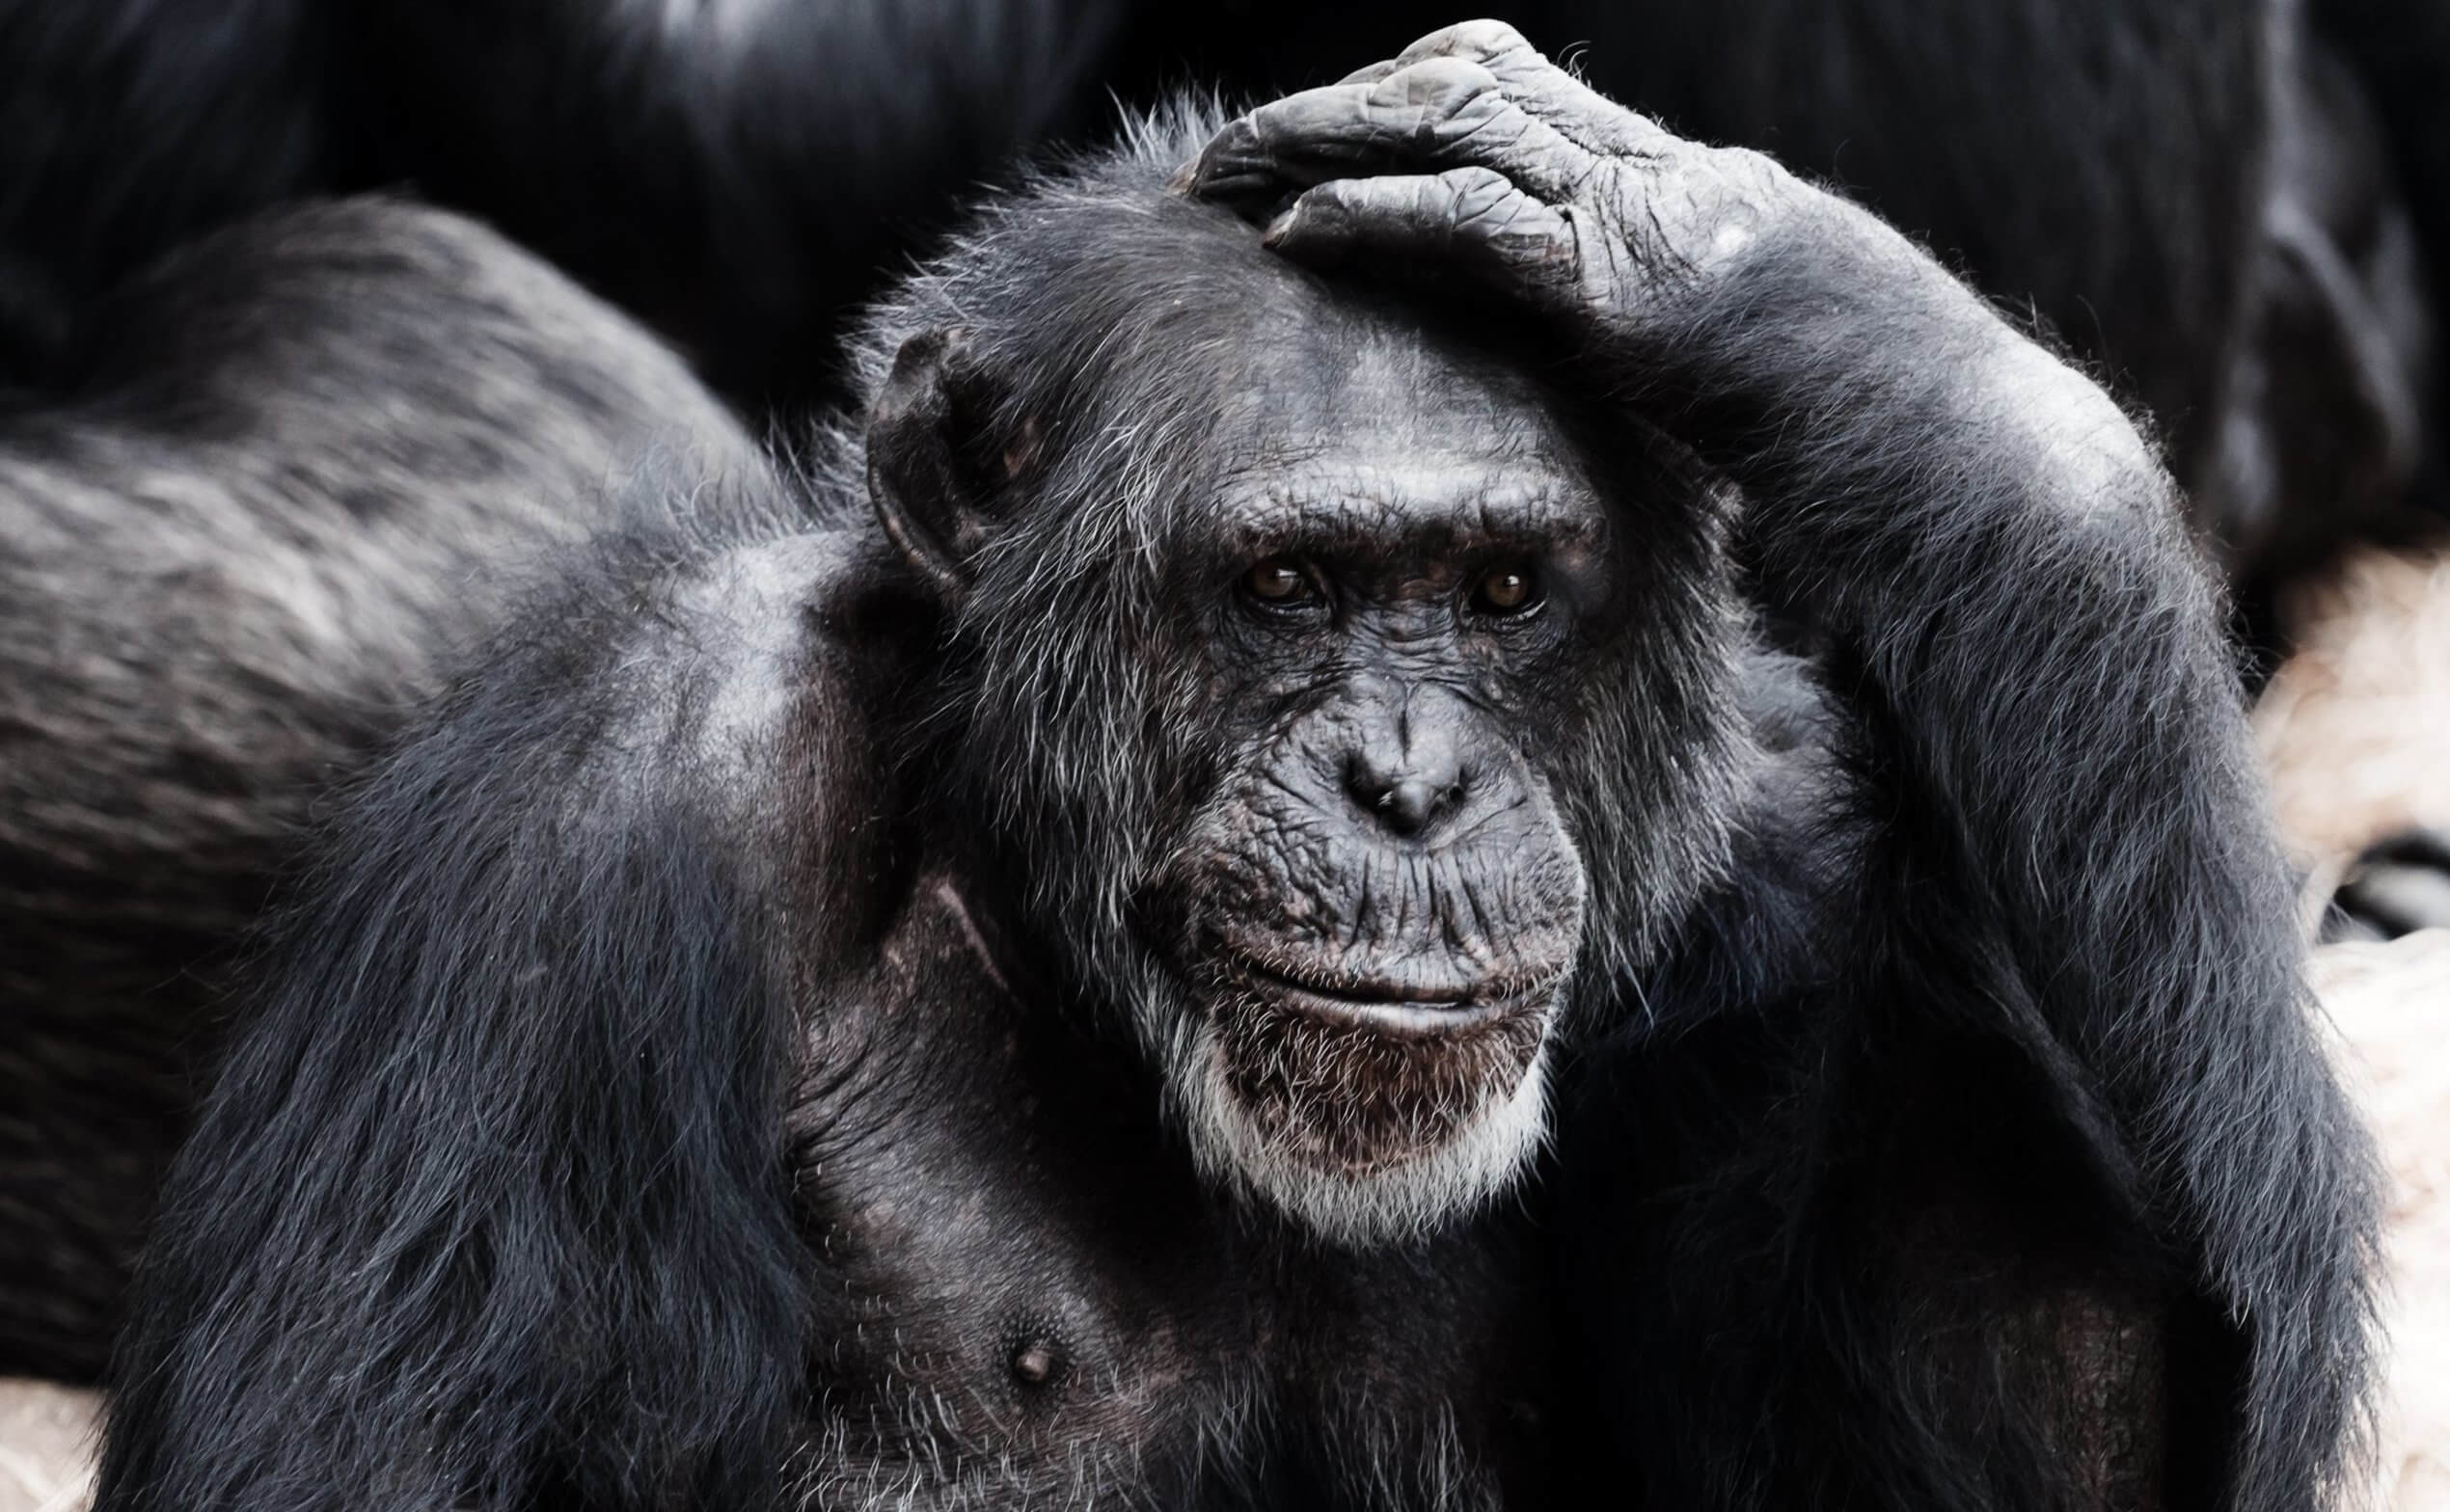 Os macacos também седеют, mas não por causa do envelhecimento